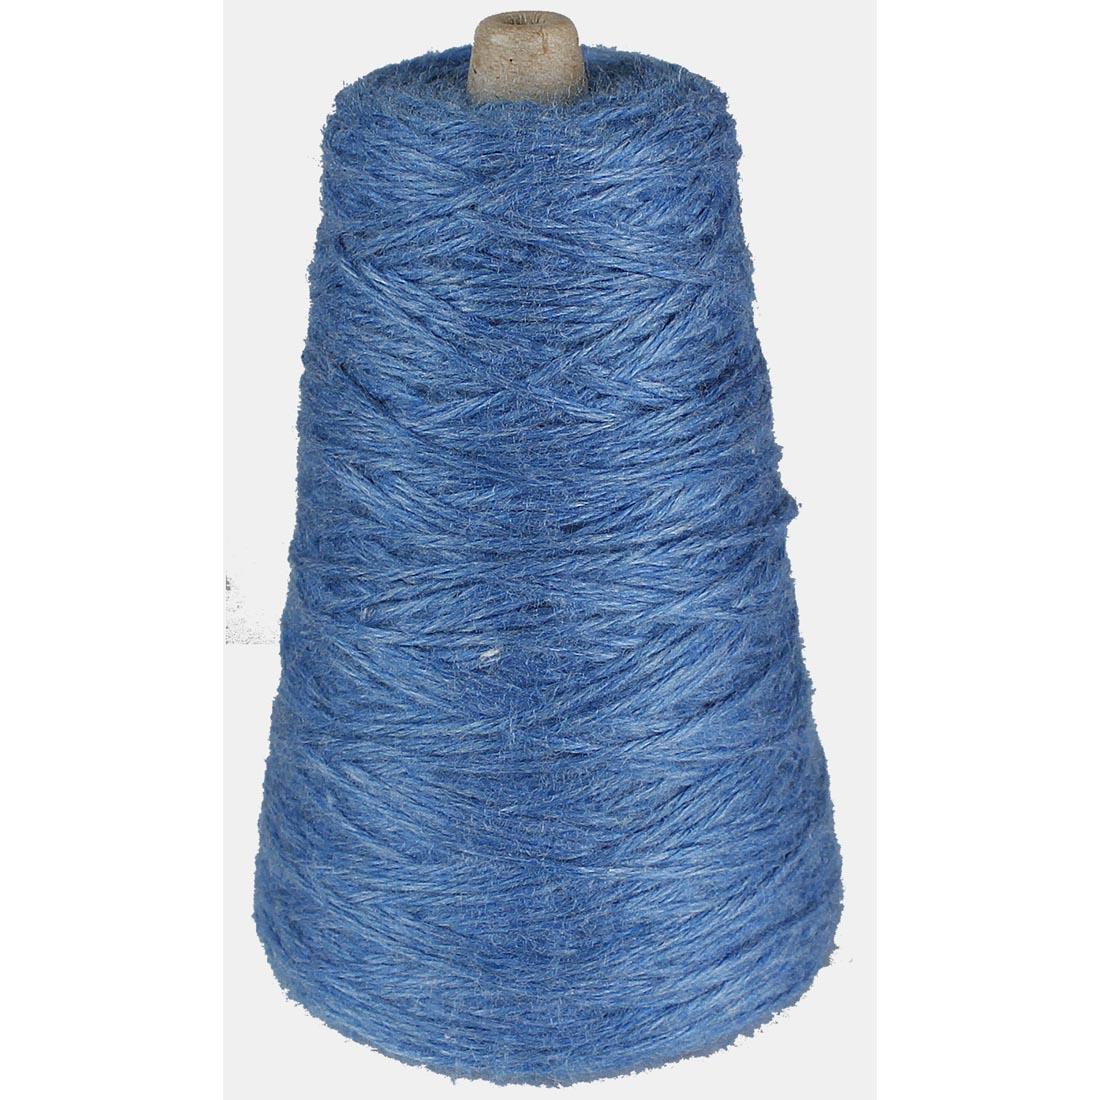 Cone of Blue Trait-tex 4-Ply Yarn